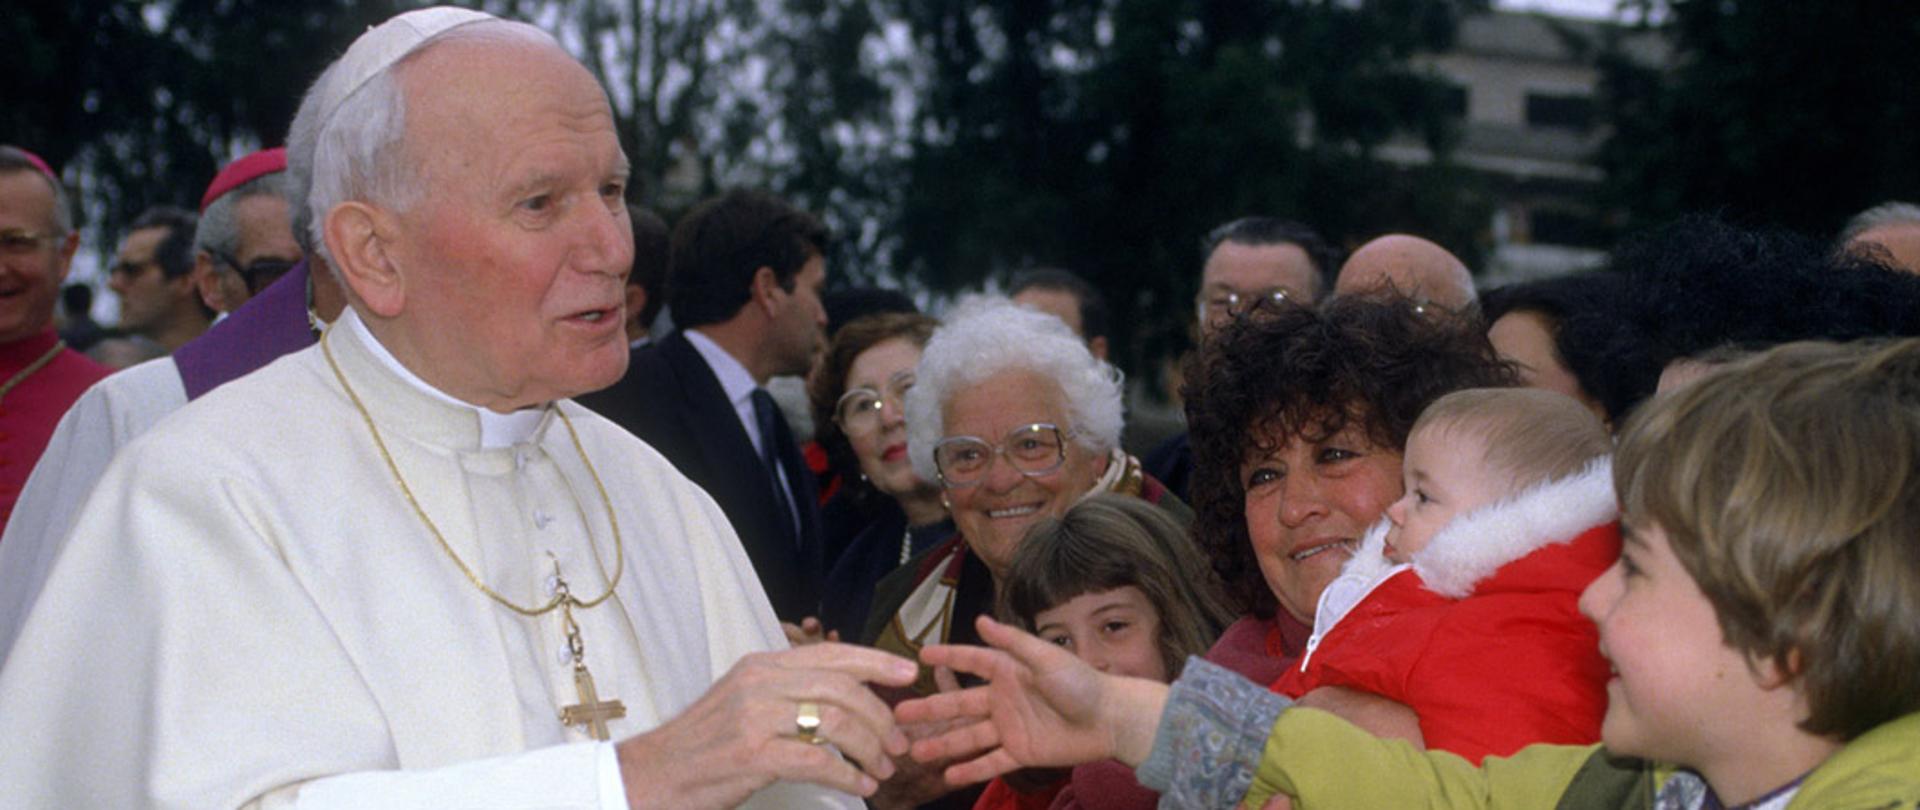 13.03.1994 Roma. Il Papa Giovanni Paolo II visita la parrocchia di San Francesco di Sales. Il Santo Padre saluta i bambini.